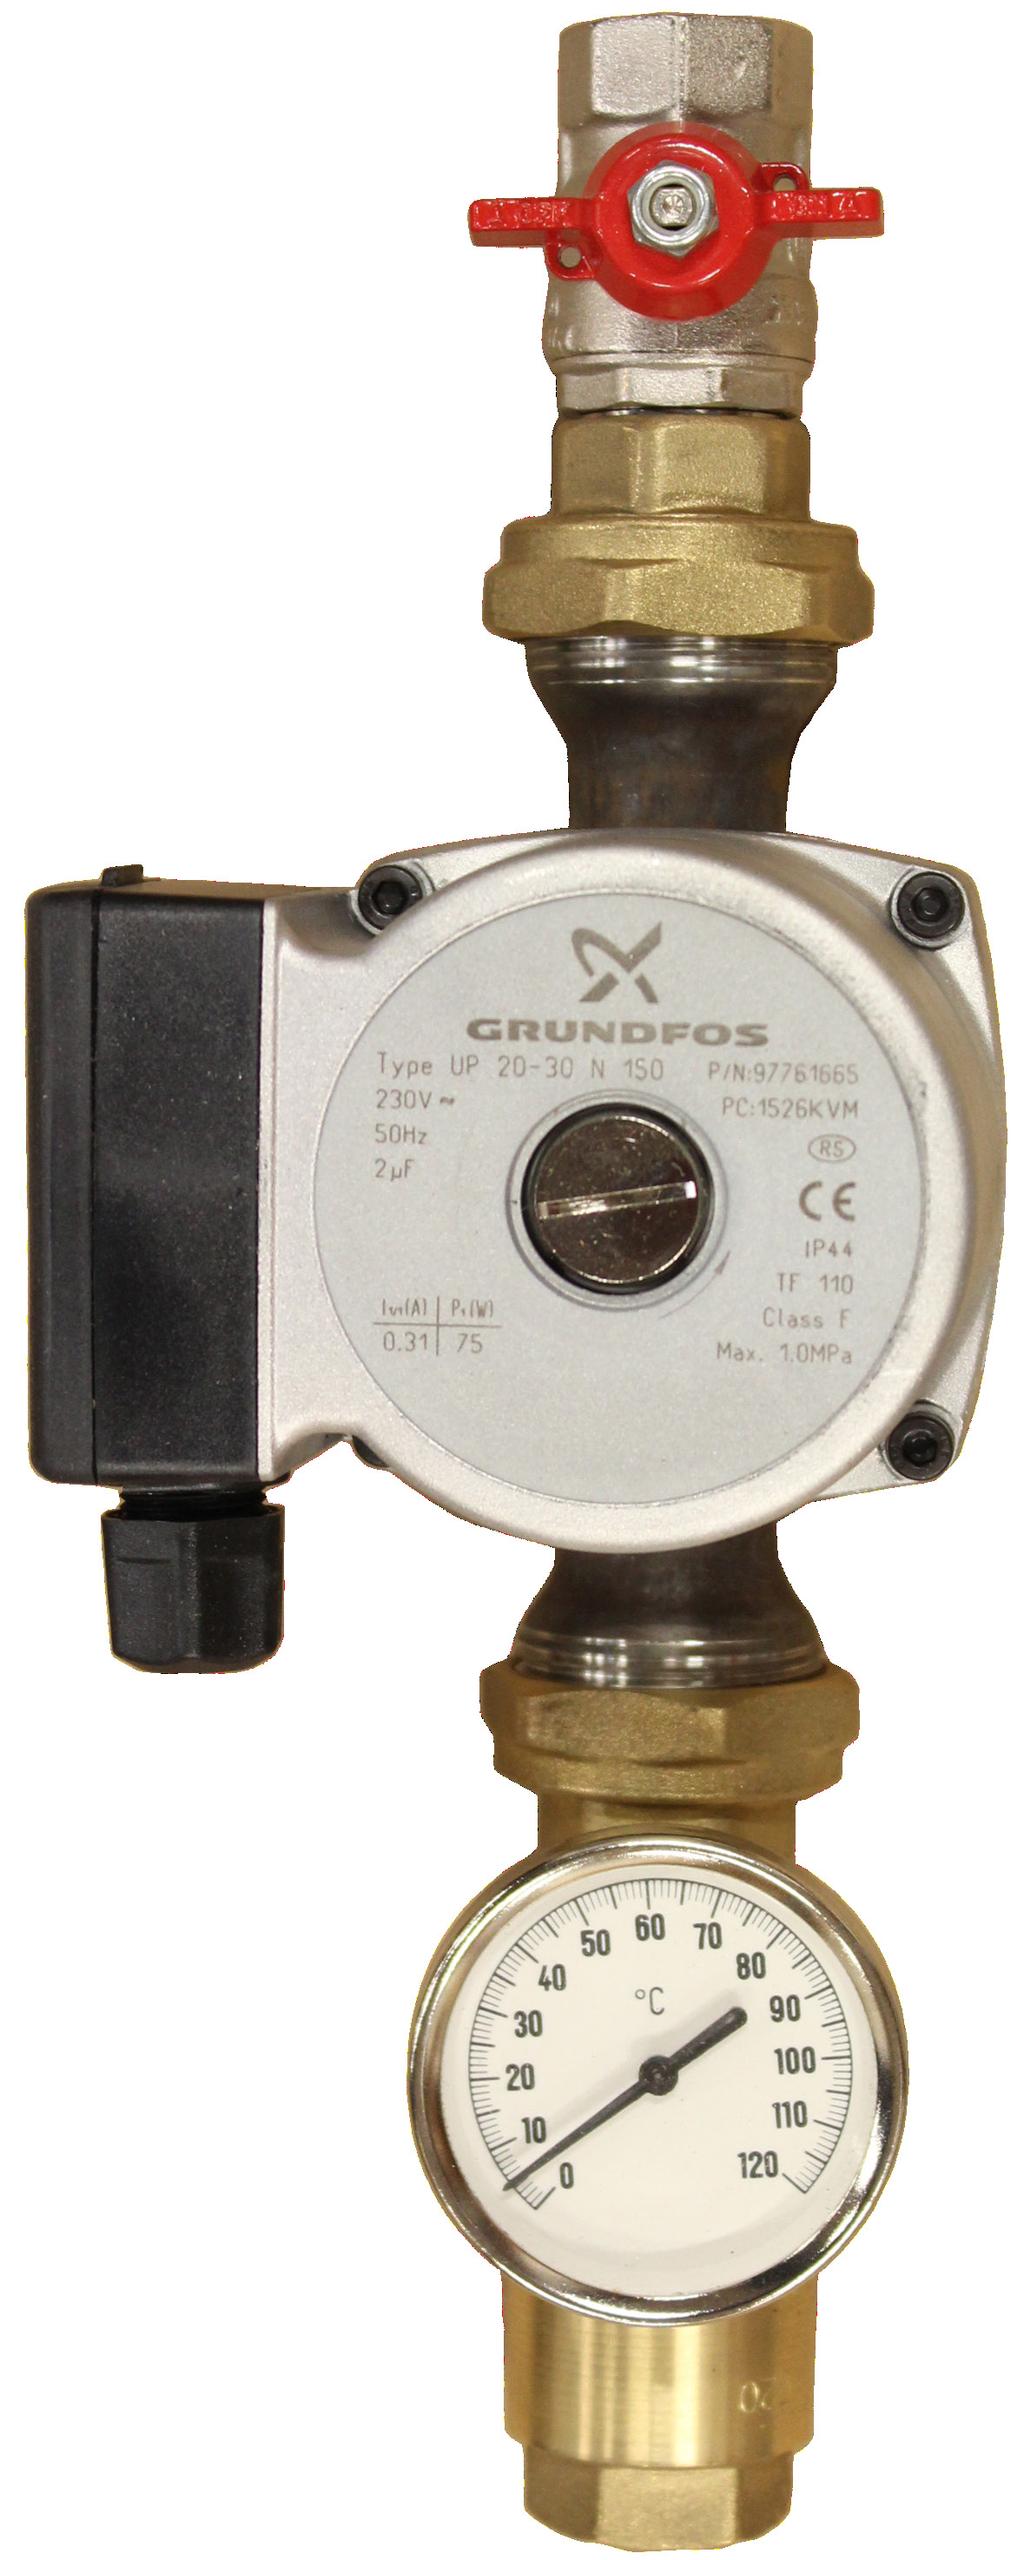 VVC-Pump (Tillval) Grundfos UP20-30N Art.nr: 112 513 9999 1709 Pumpen är uppbyggd enligt våtlöparprincipen, dvs en integrerad enhet motor/pump utan axeltätning och med bara två packningar för tätning.